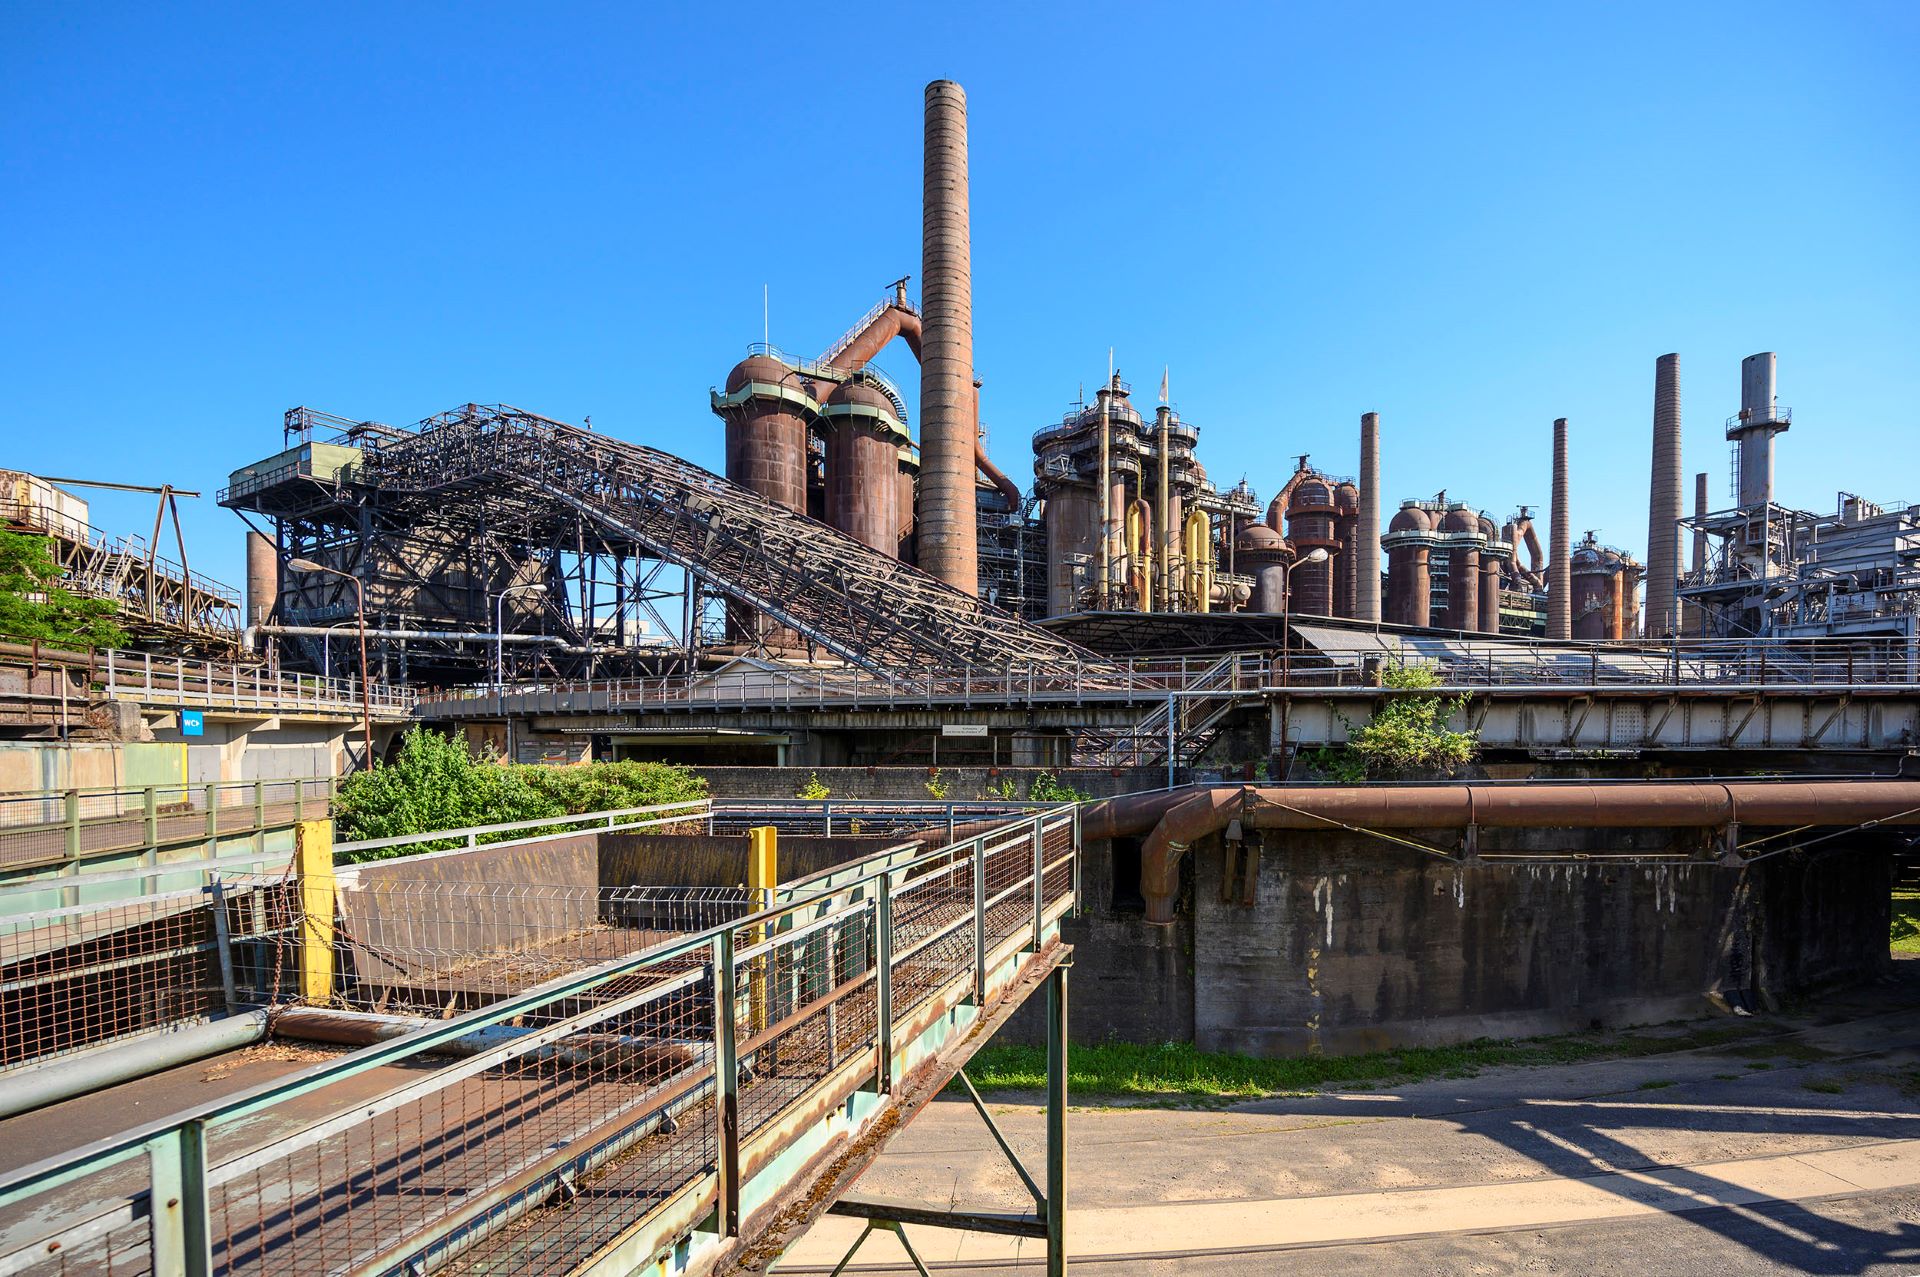 Les structures de couleur rouille qui constituent l'usine sidérurgique de Völklingen sont représentées à l'arrière-plan. Une scène industrielle avec du métal de couleur rouille sur diverses machines historiques est représentée sur un ciel bleu.